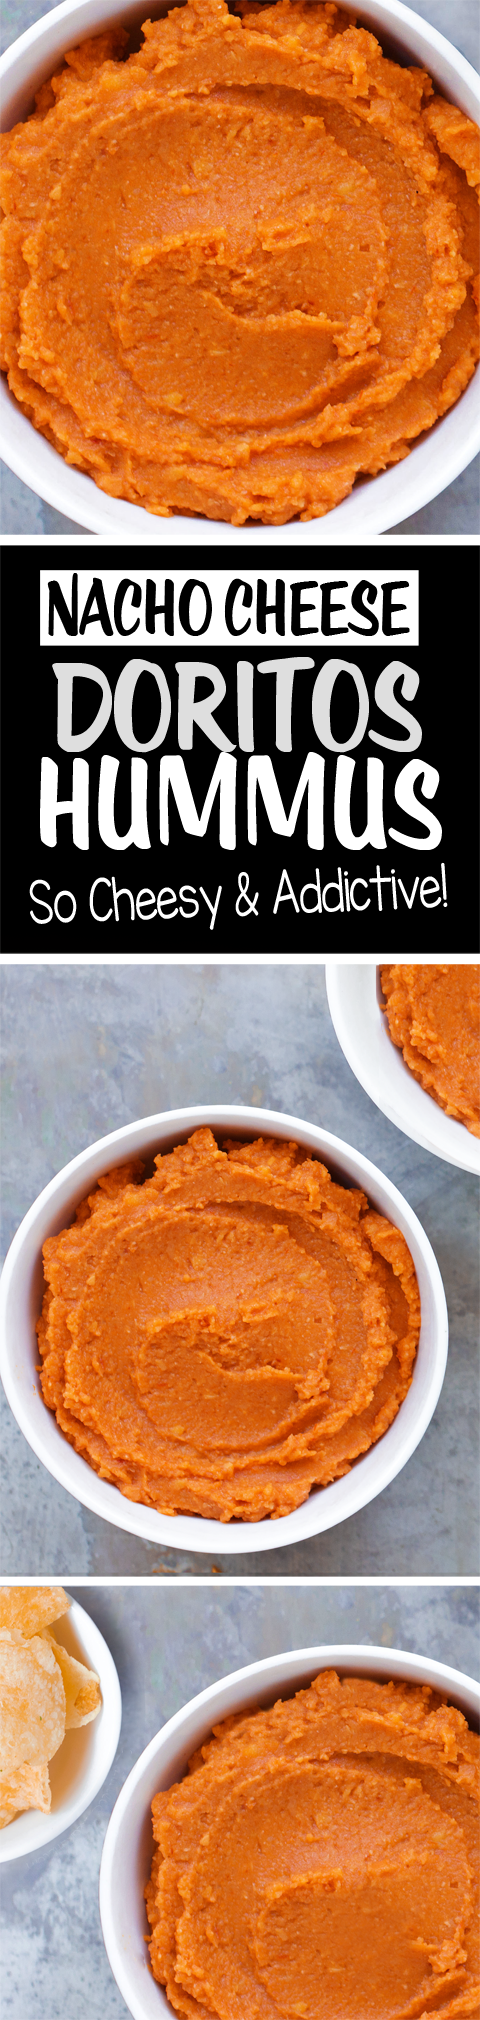 Nacho Cheese Doritos Hummus - MUST TRY!